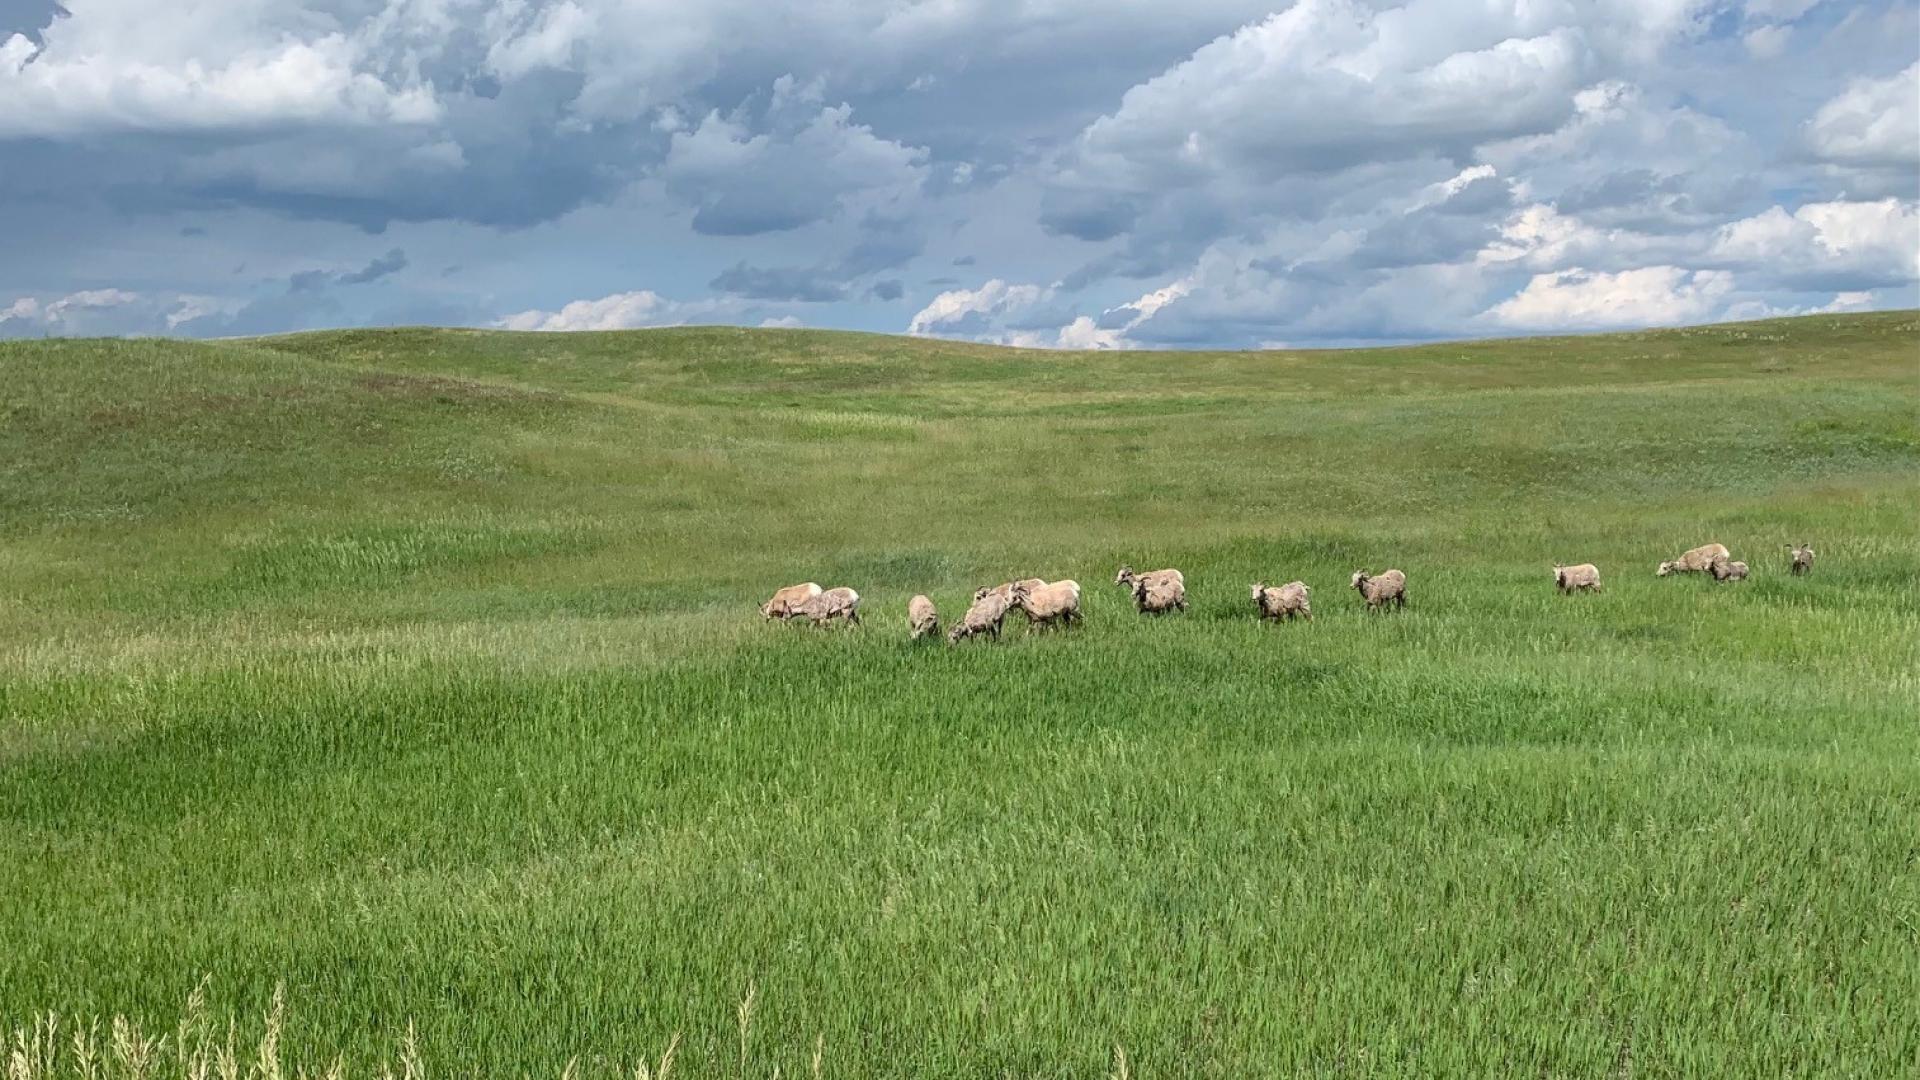 Big horn sheep in parairie grass